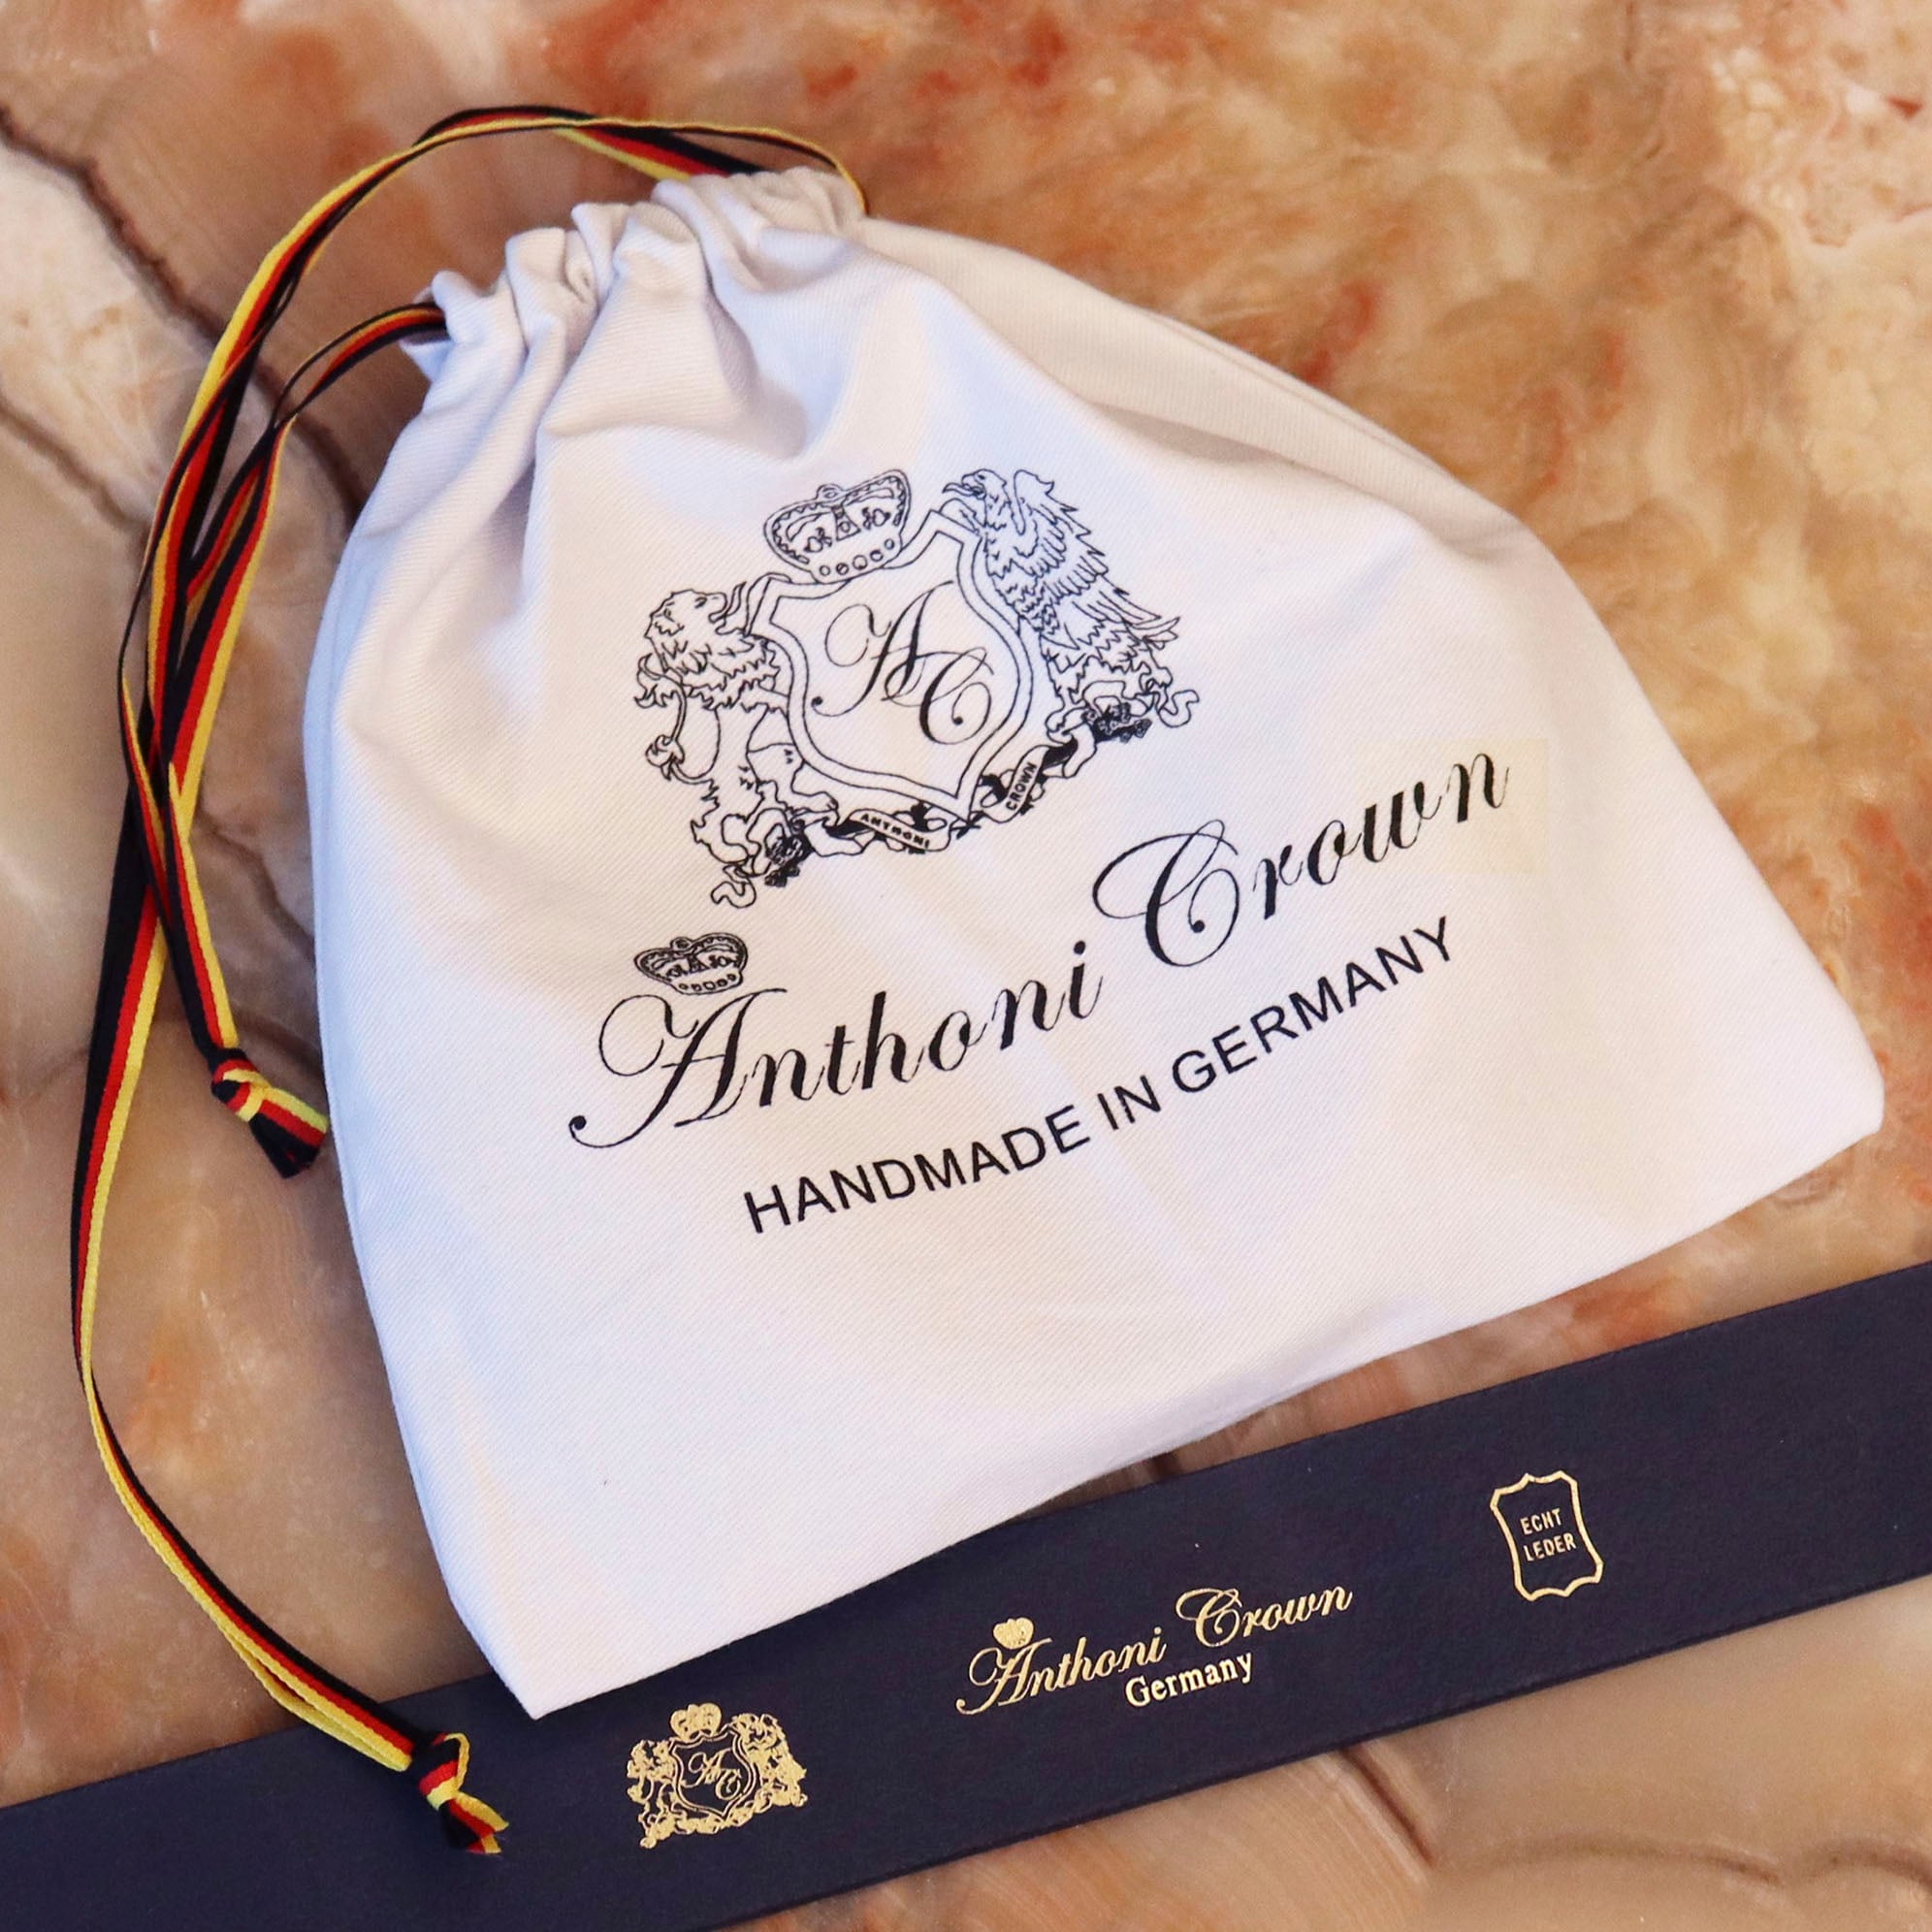 Anthoni Crown online Schweiz Ledergürtel, Dornschliesse goldfarbener Jelmoli-Versand bestellen bei filigraner mit